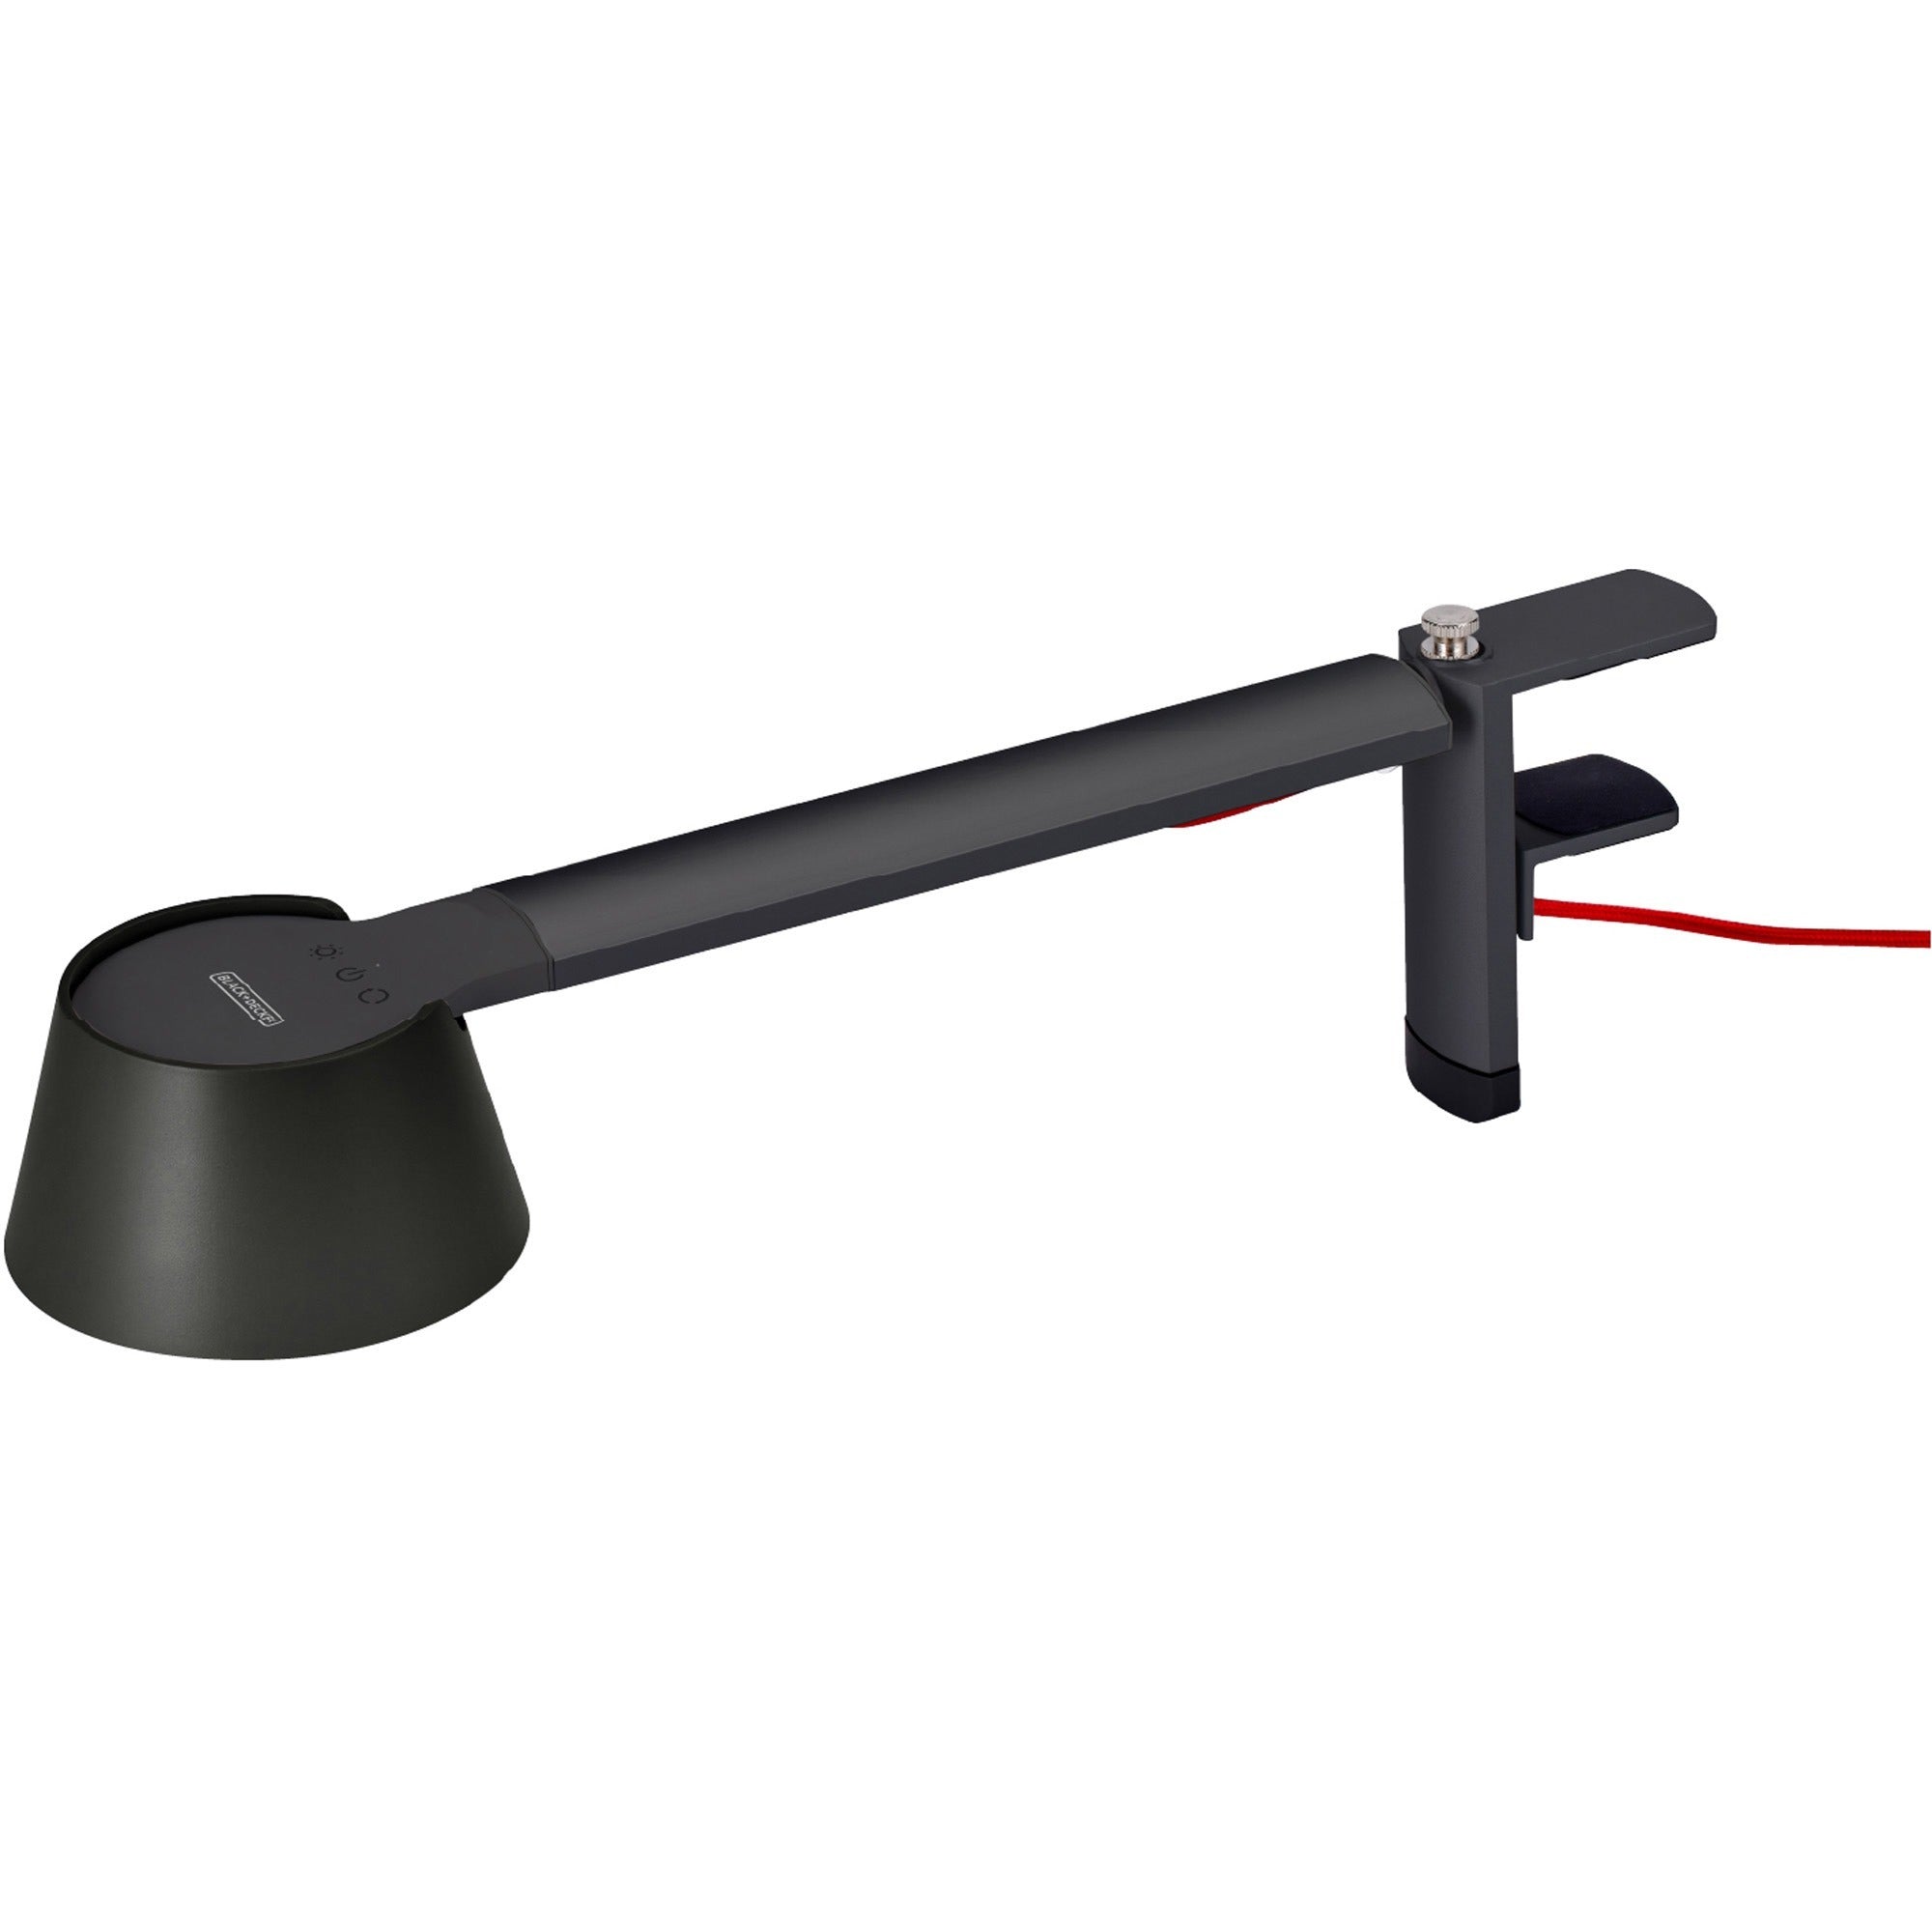 bostitch-verve-adjustable-led-desk-lamp-led-bulb-adjustable-dimmable-adjustable-brightness-clock-durable-swivel-base-color-changing-mode-aluminum-desk-mountable-black-for-desk-alexa-supported_bos2200clsmbk - 1